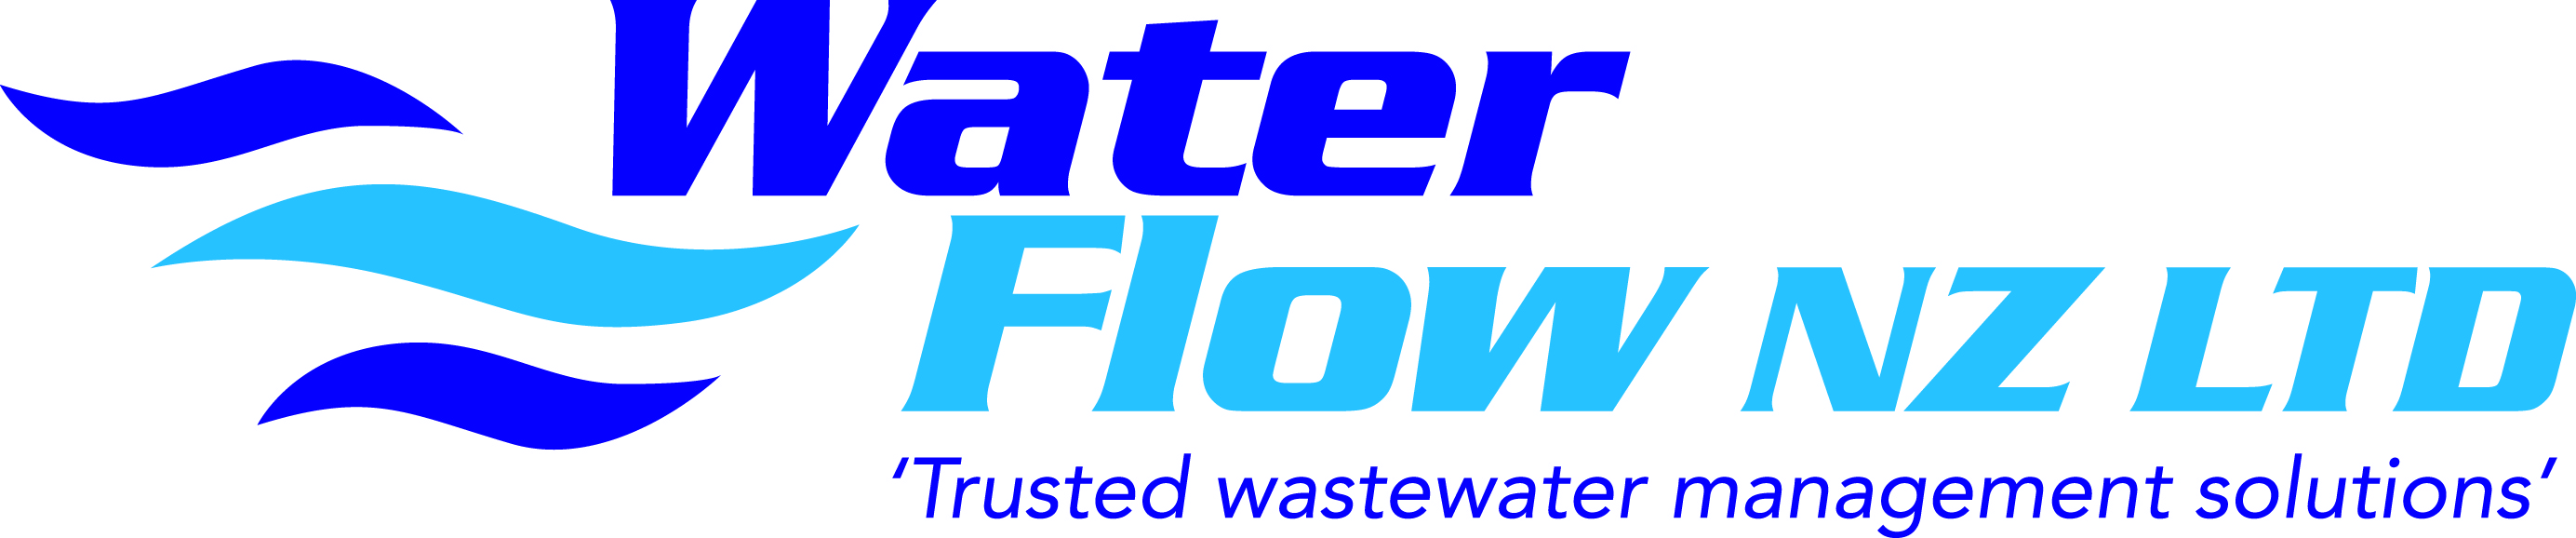 water flow logo